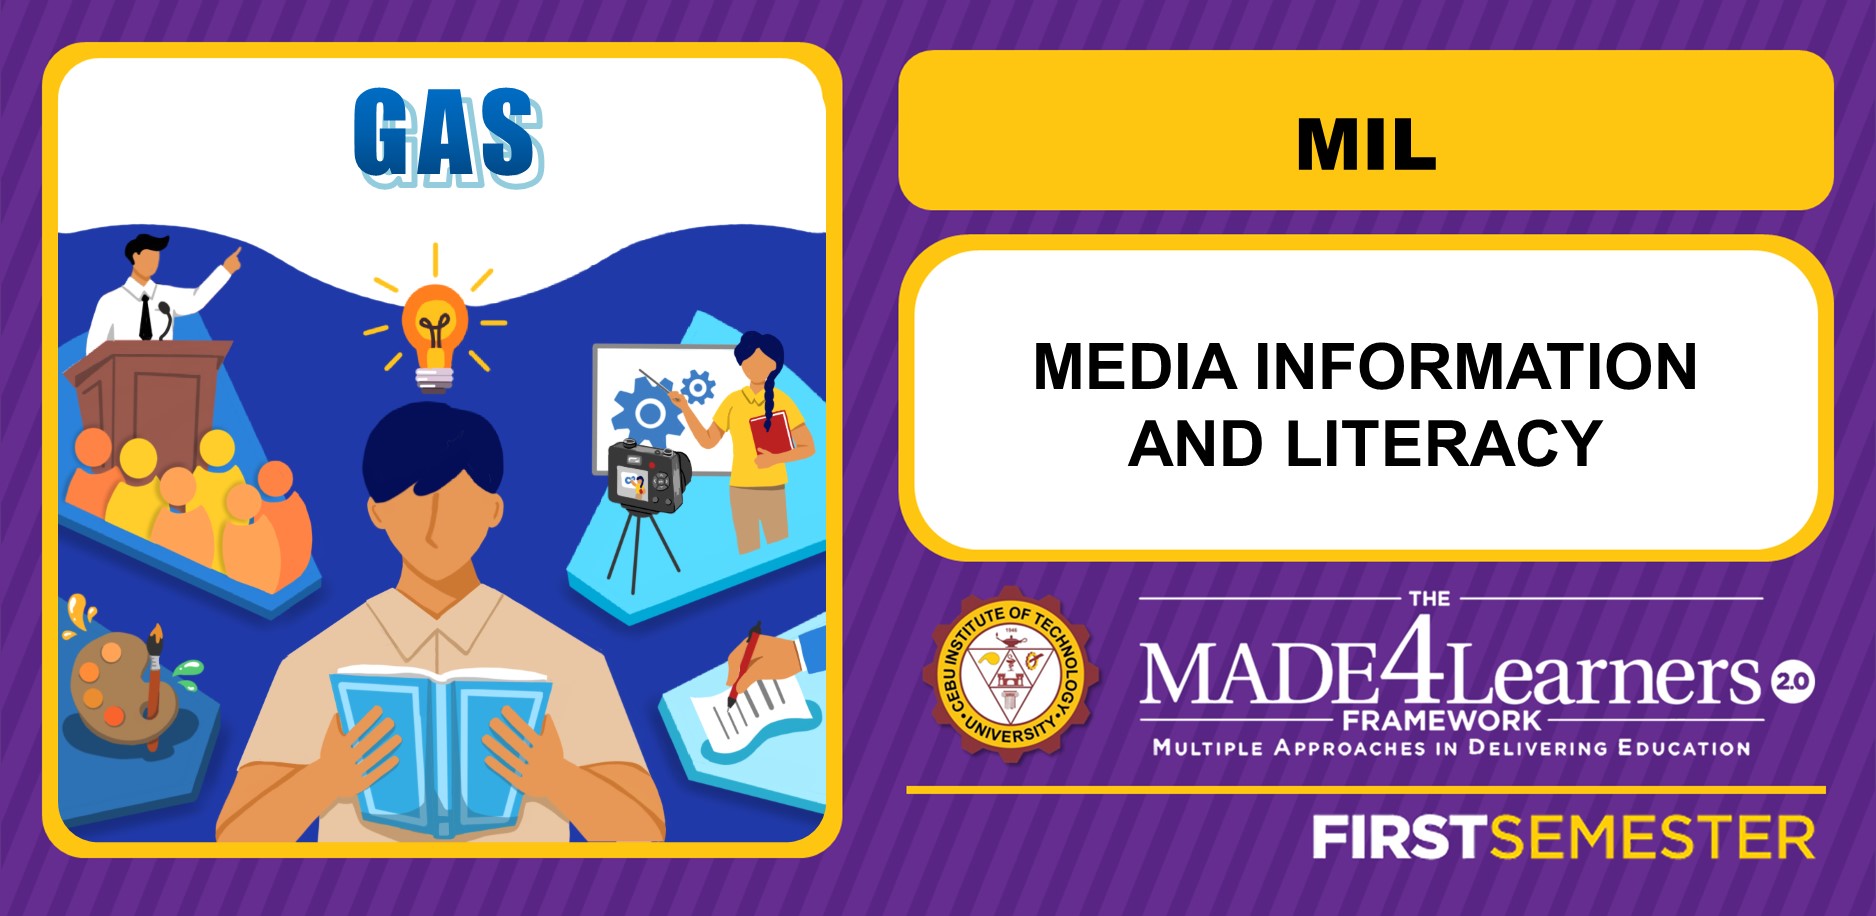 MIL: Media Information Literacy (Lanit)